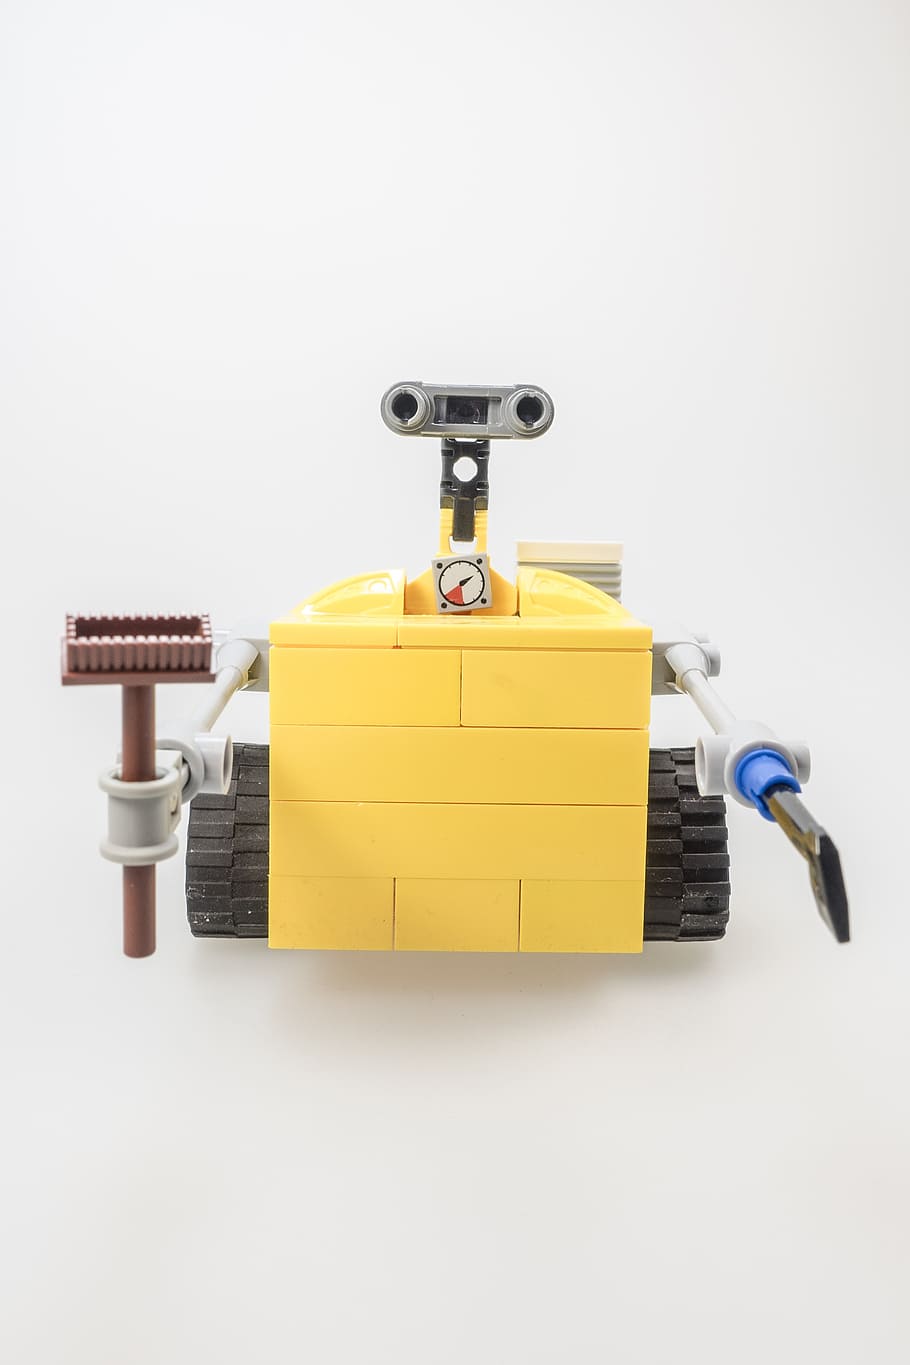 amarelo, cinza, brinquedo wall-e, lego, figura, cult, computador, robô, máquina, controlado